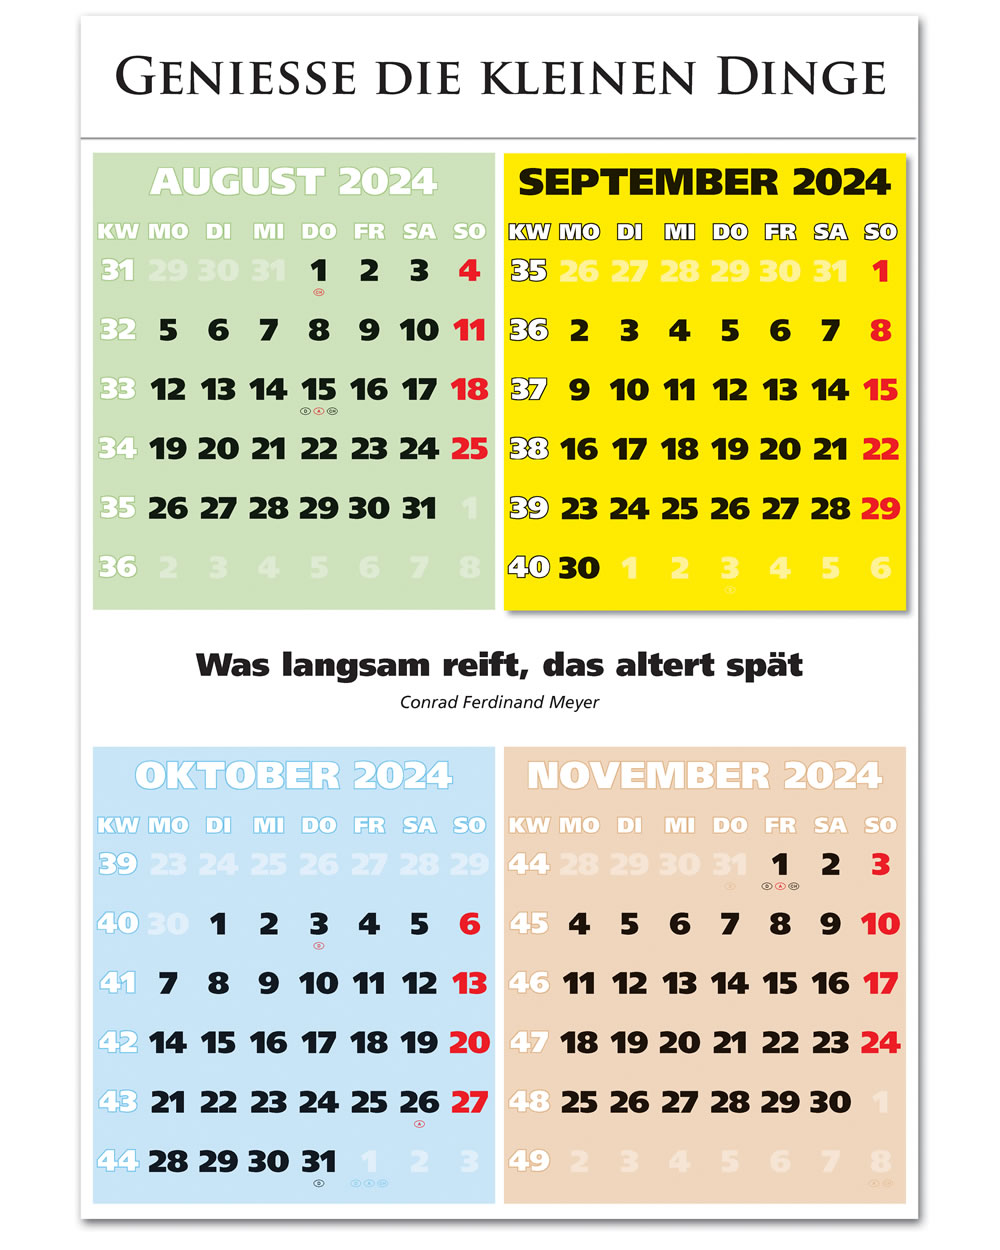 IMPULS-4-Monatsspruch Kalender 2024 **